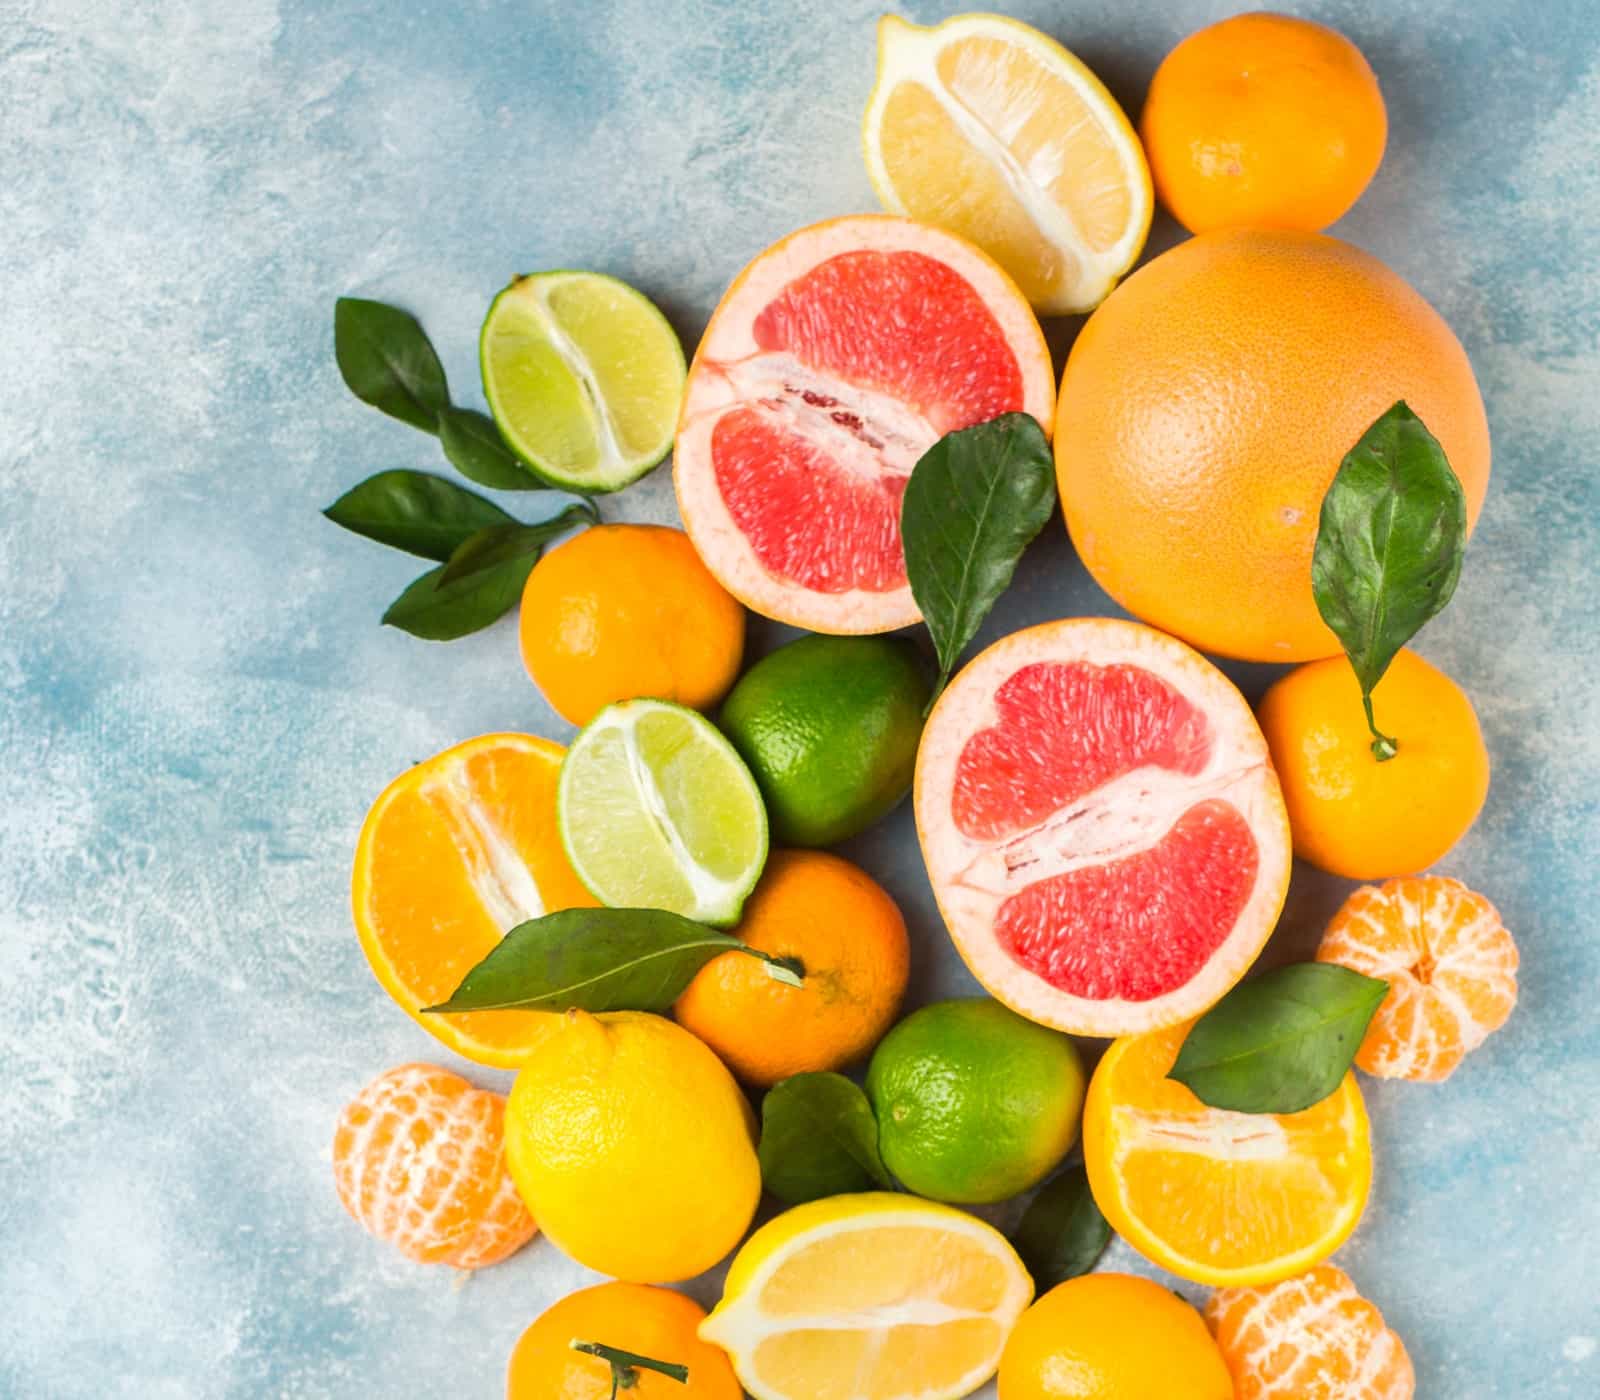 Citrus Fruits benefits